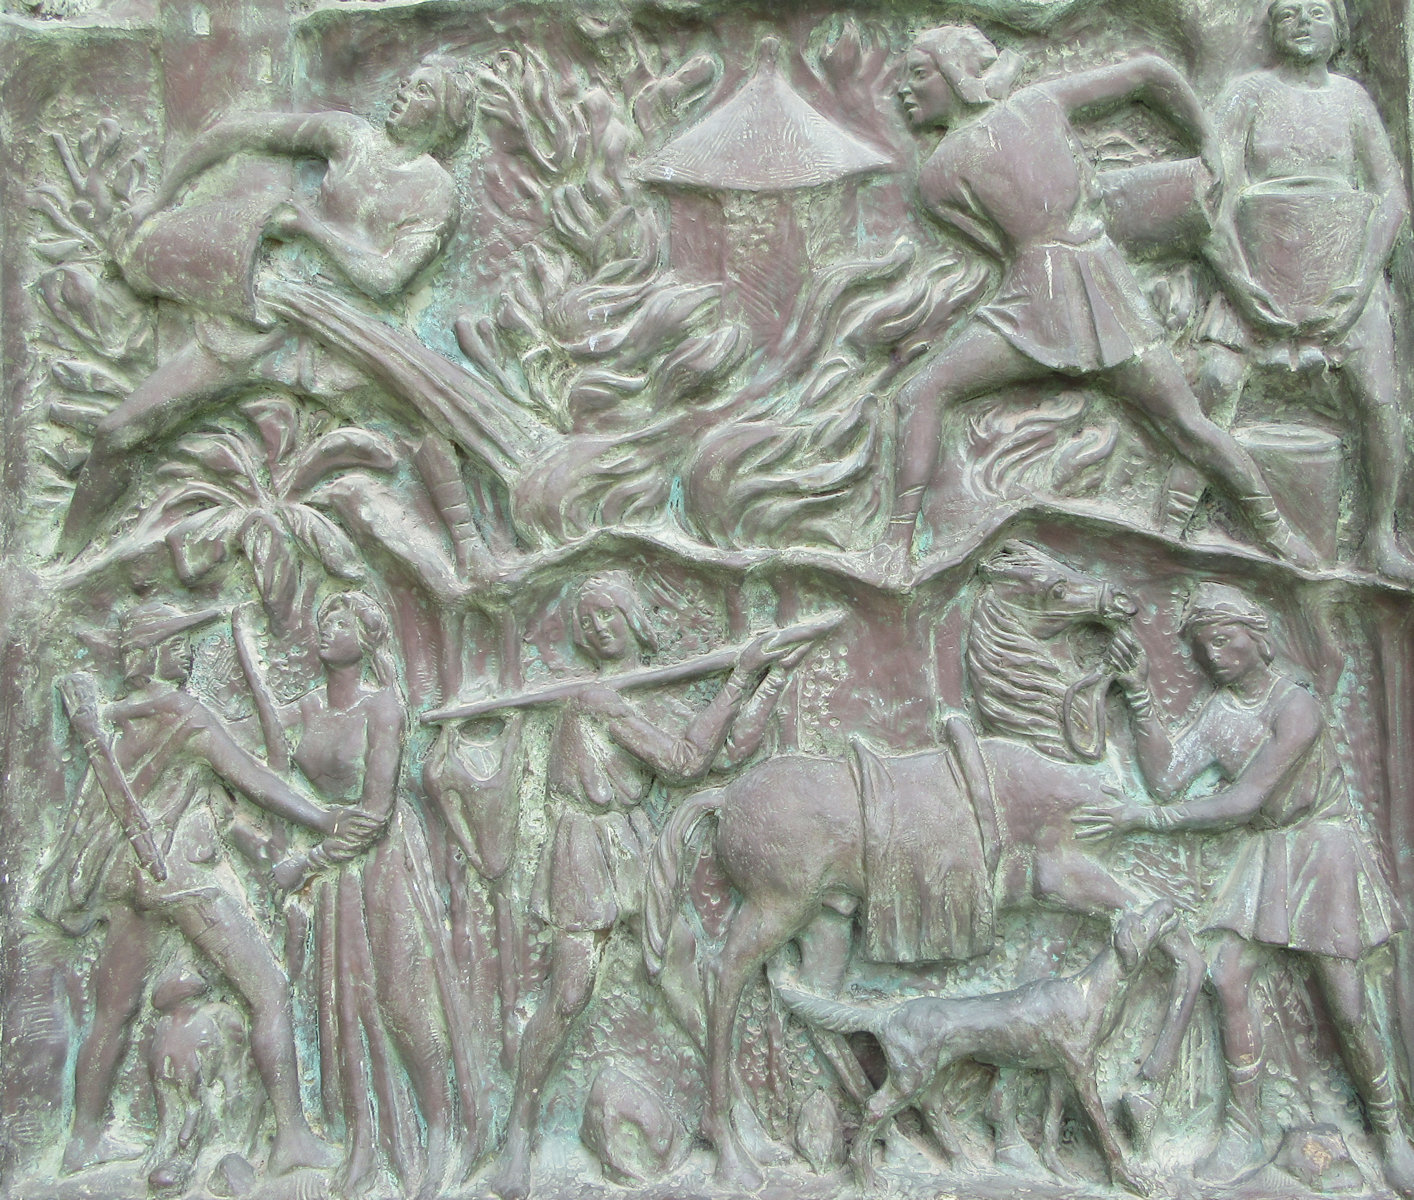 Joseph Pirrone: Das von Konrad verursachte Feuer, Bronzerelief an der Tür der Kathedrale in Noto, 1982